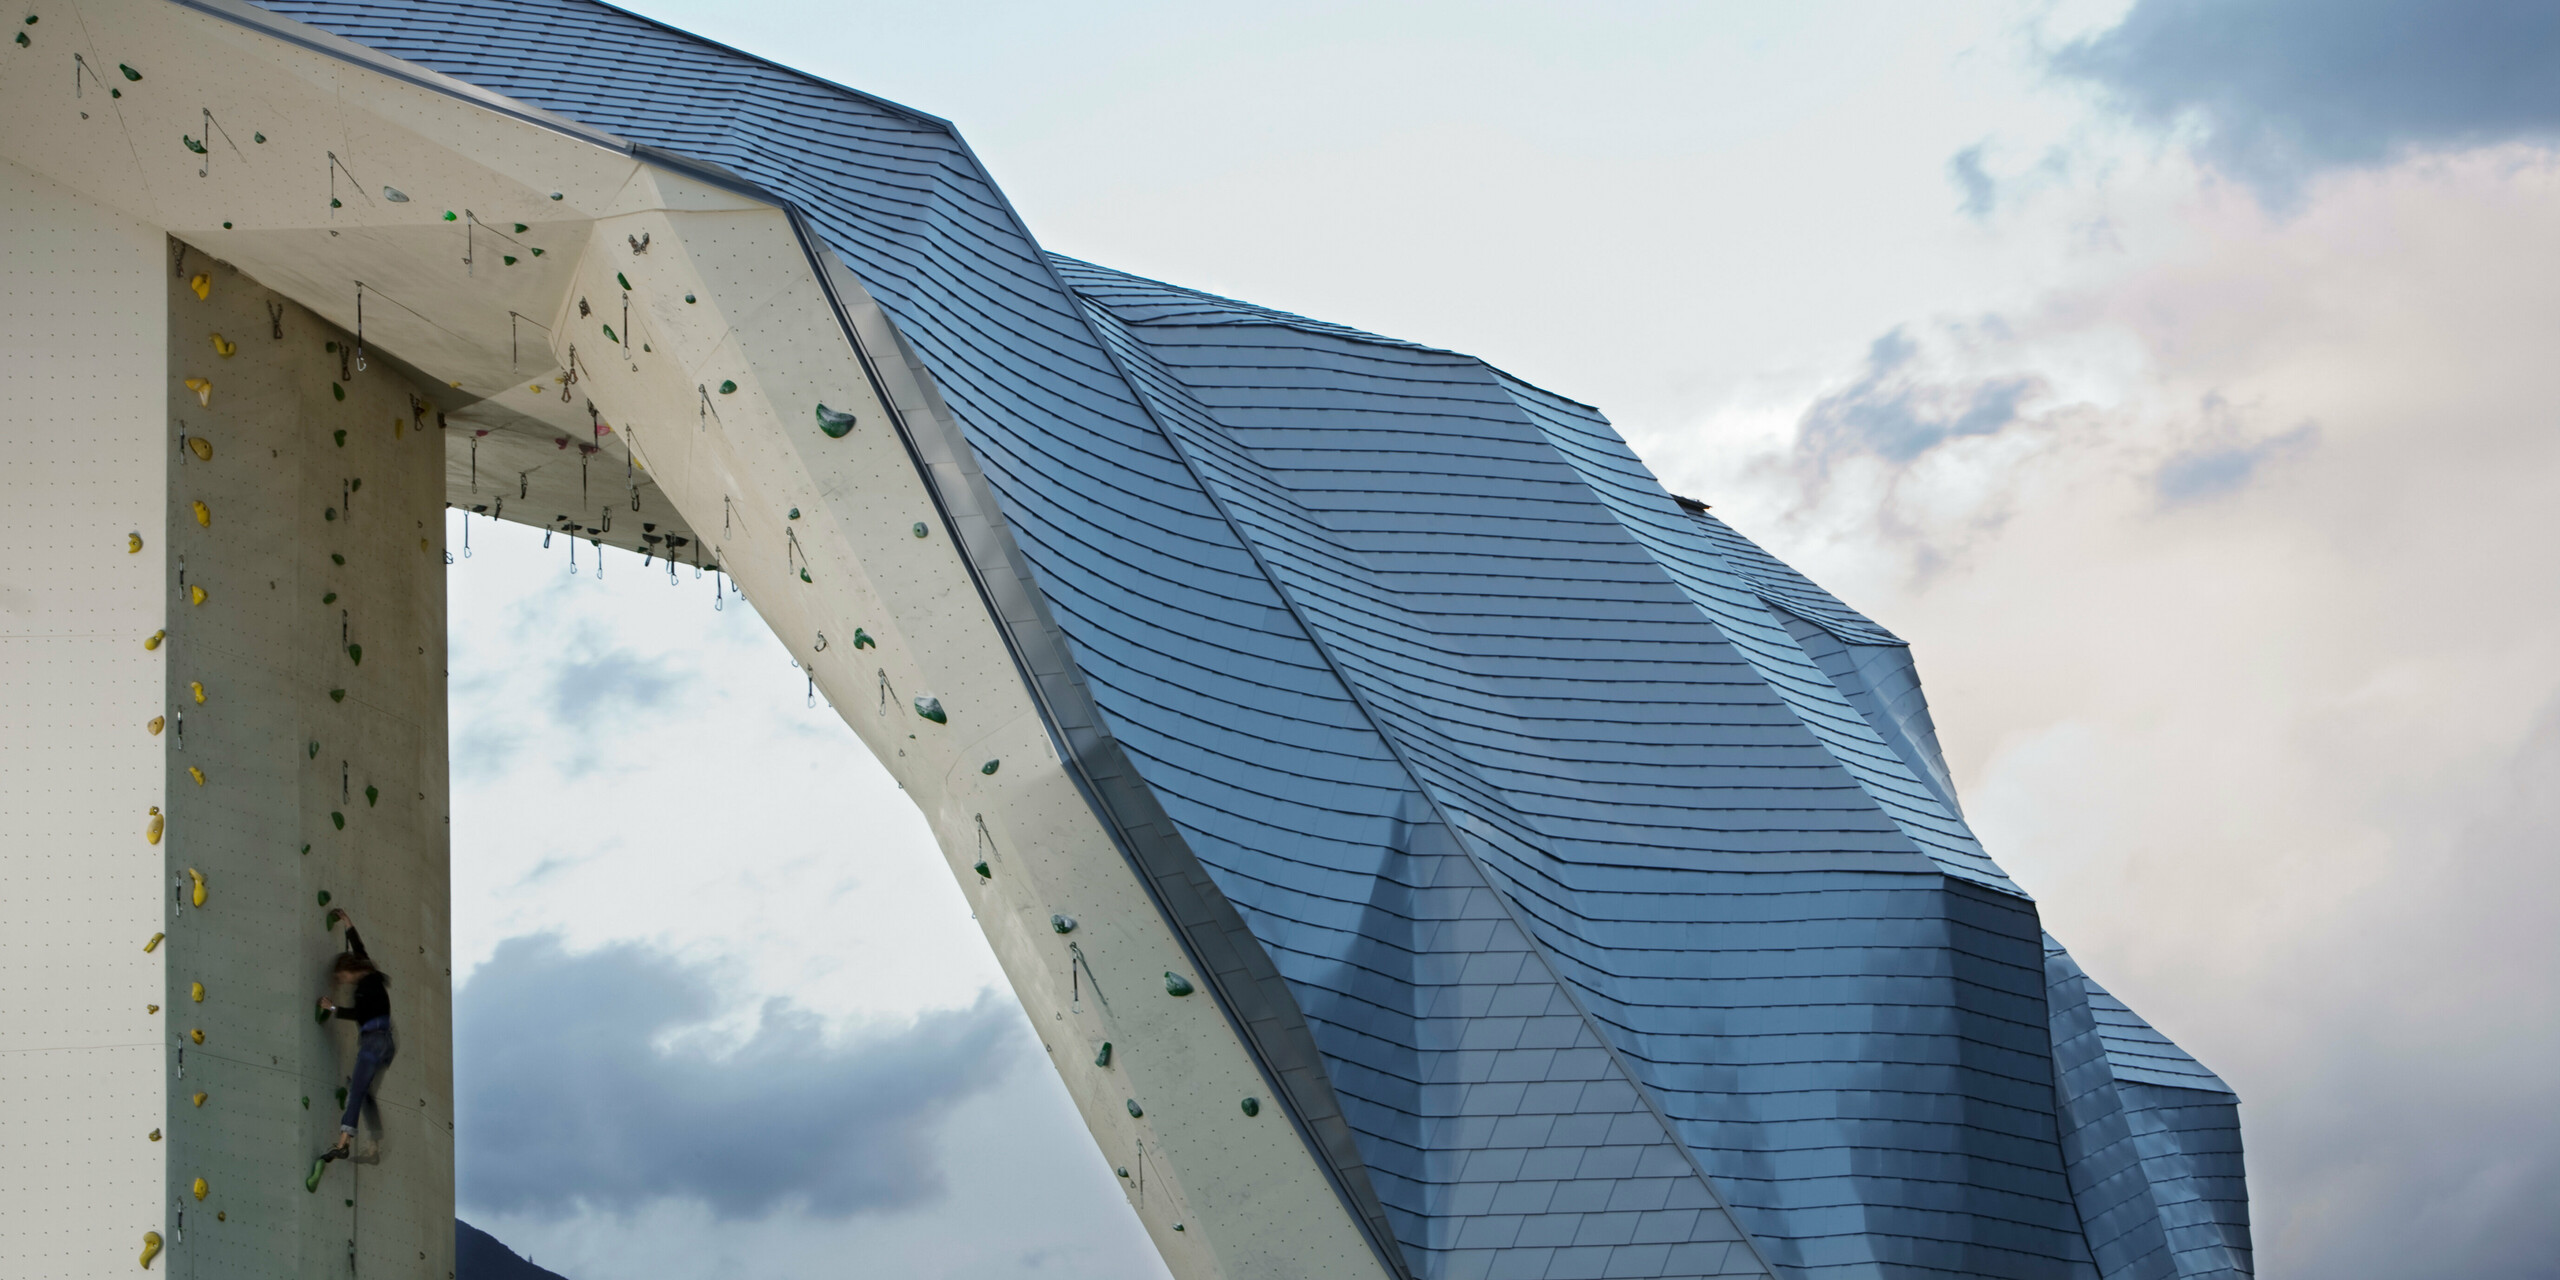 Im Vordergrund die Spitze des Kletterturms Imst mit Fassade bzw. Dach aus PREFA Dachschindeln in Silbermetallic. Am linken Bildrand eine Kletterin, am rechten Bildrand ein schöner Himmel in abendlicher Stimmung.